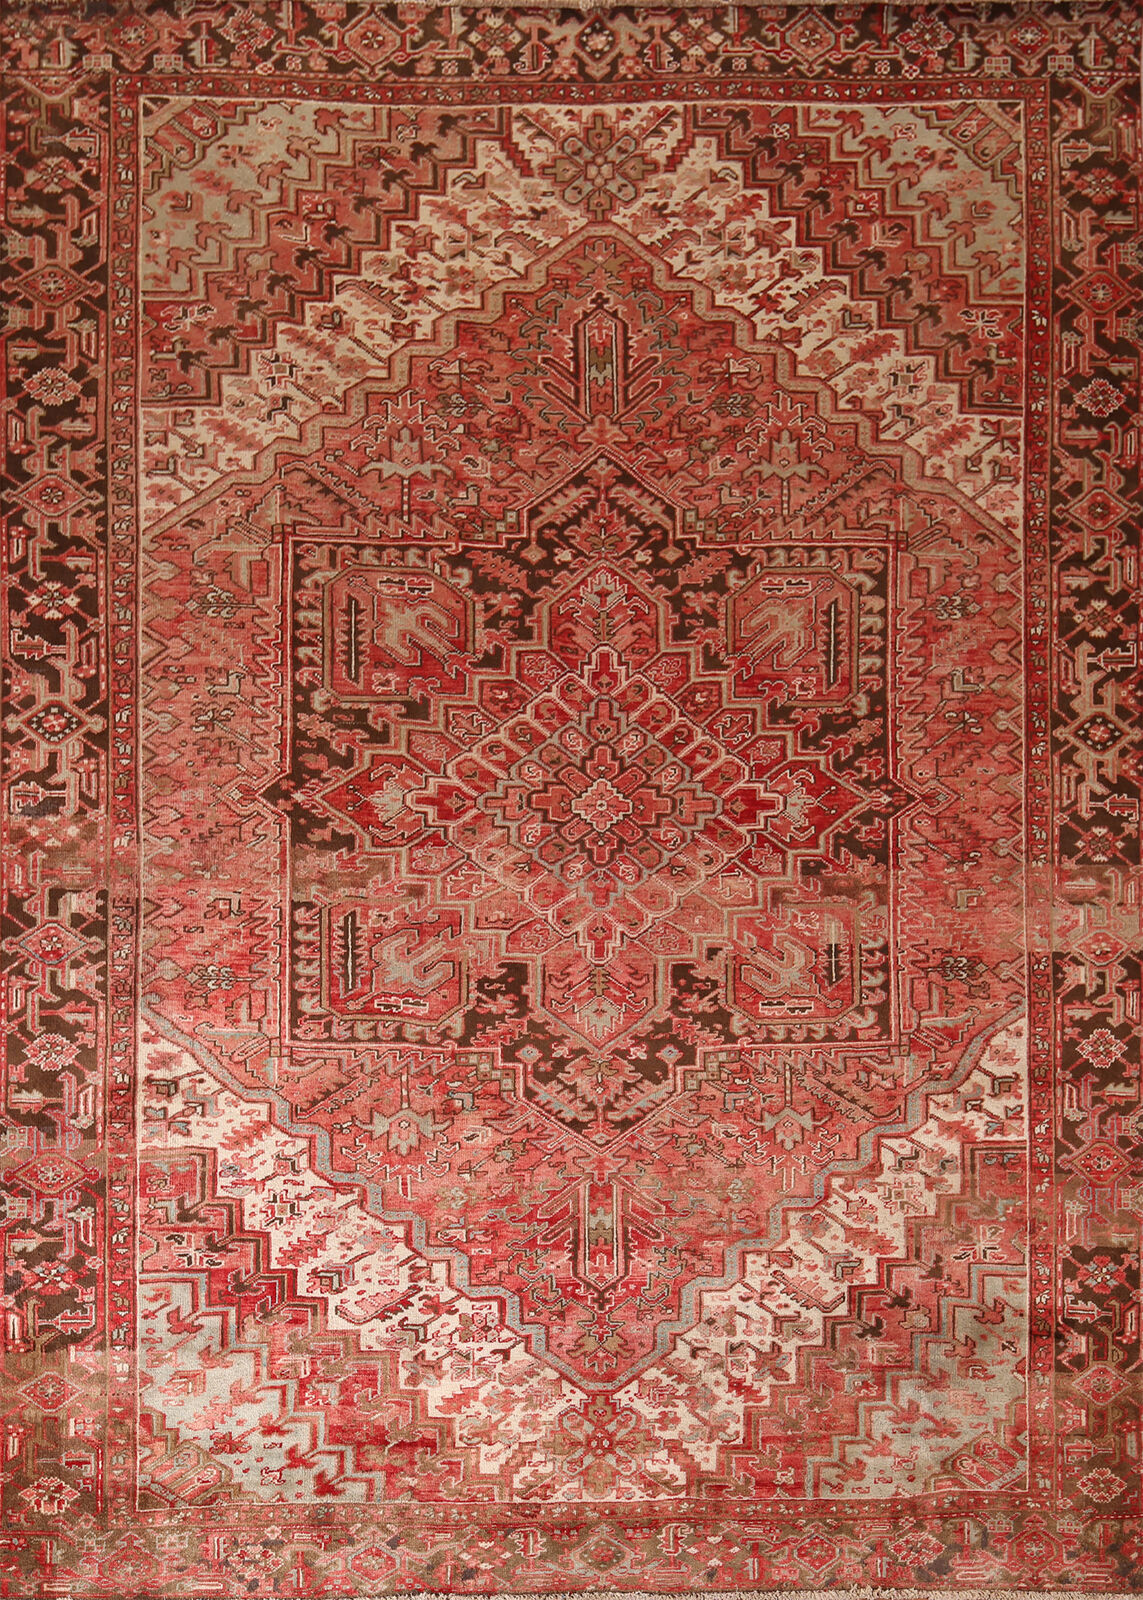 Vintage Red/ Dark brown Handmade Wool Heriz Traditional Room Size Area Rug 10x11